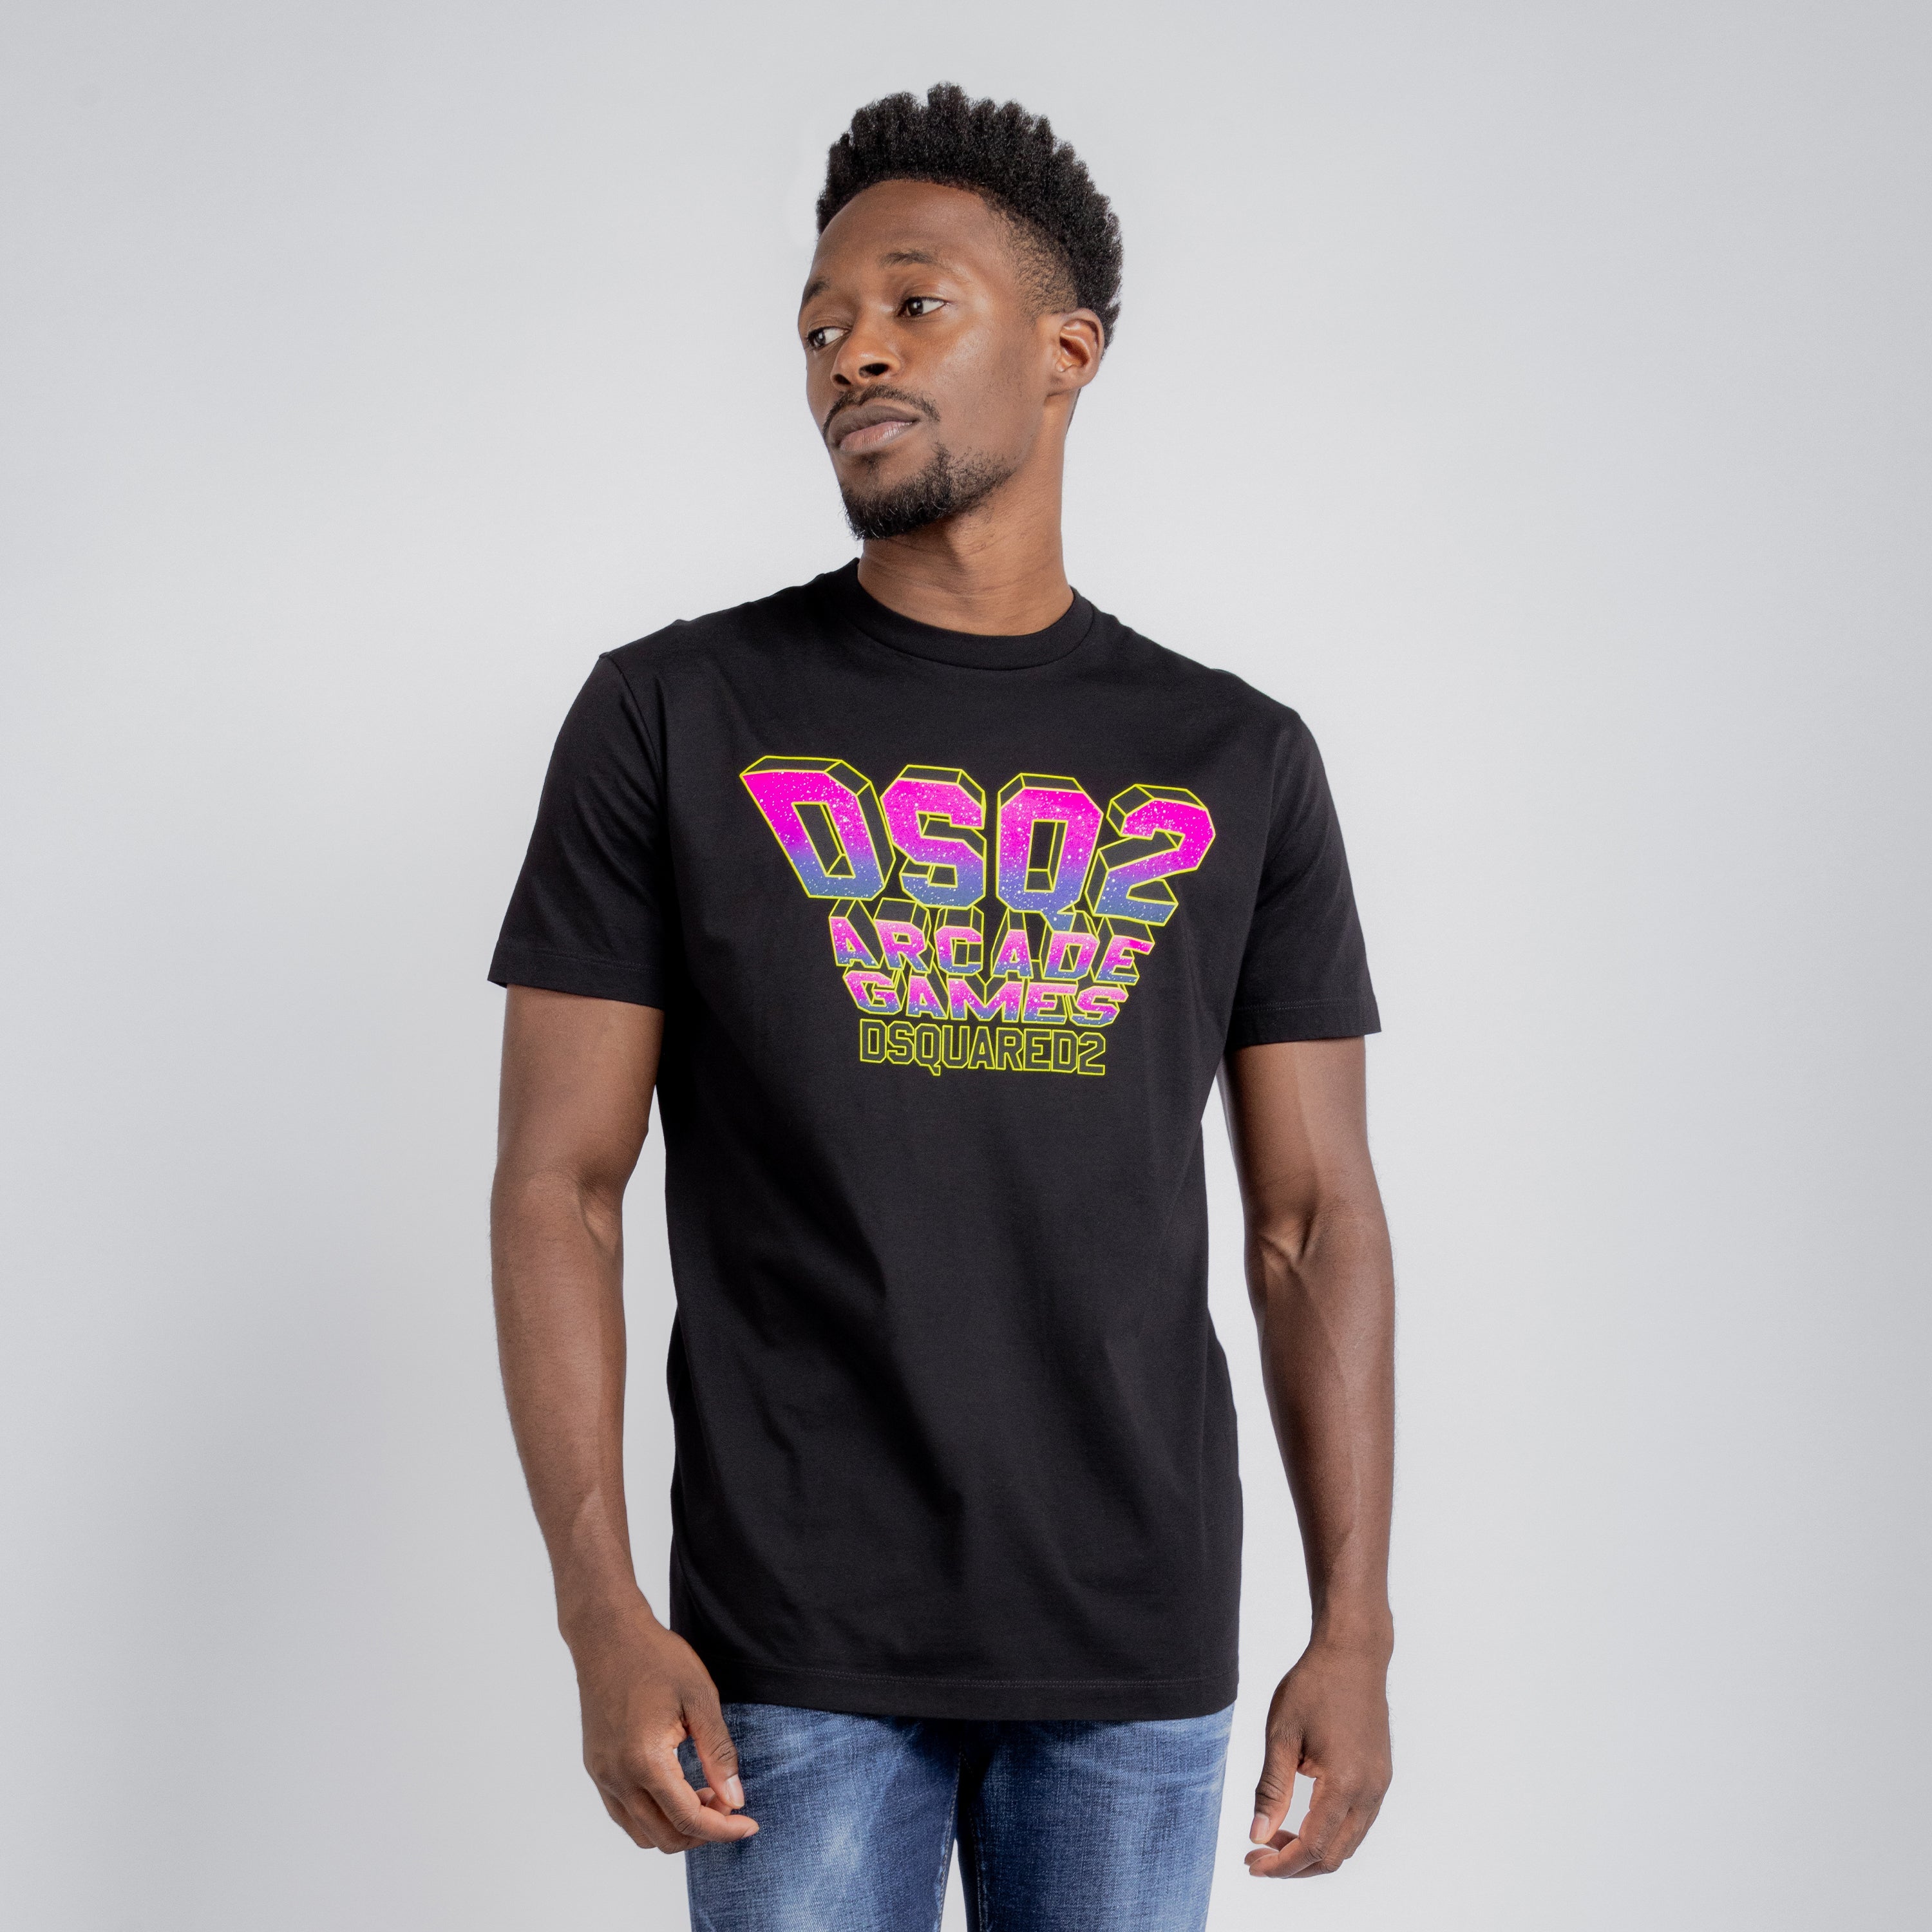 Camiseta Negra Dsquared2 Arcade Games